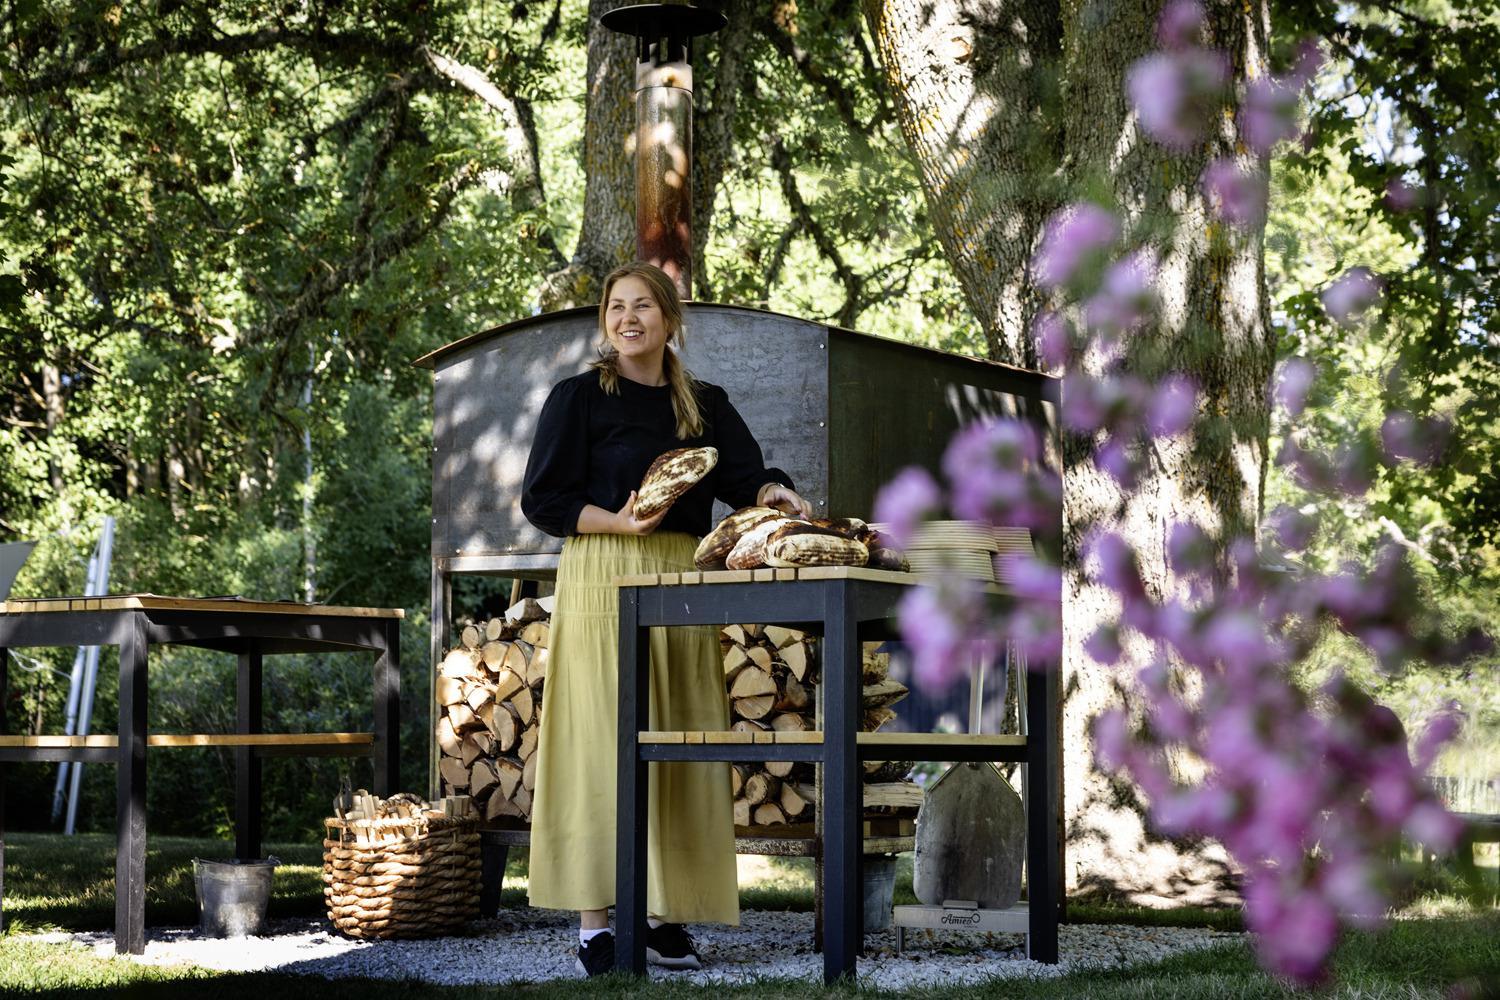 Dans un jardin pendant l'été, une femme se tient debout devant un four à bois avec du pain dans sa main.